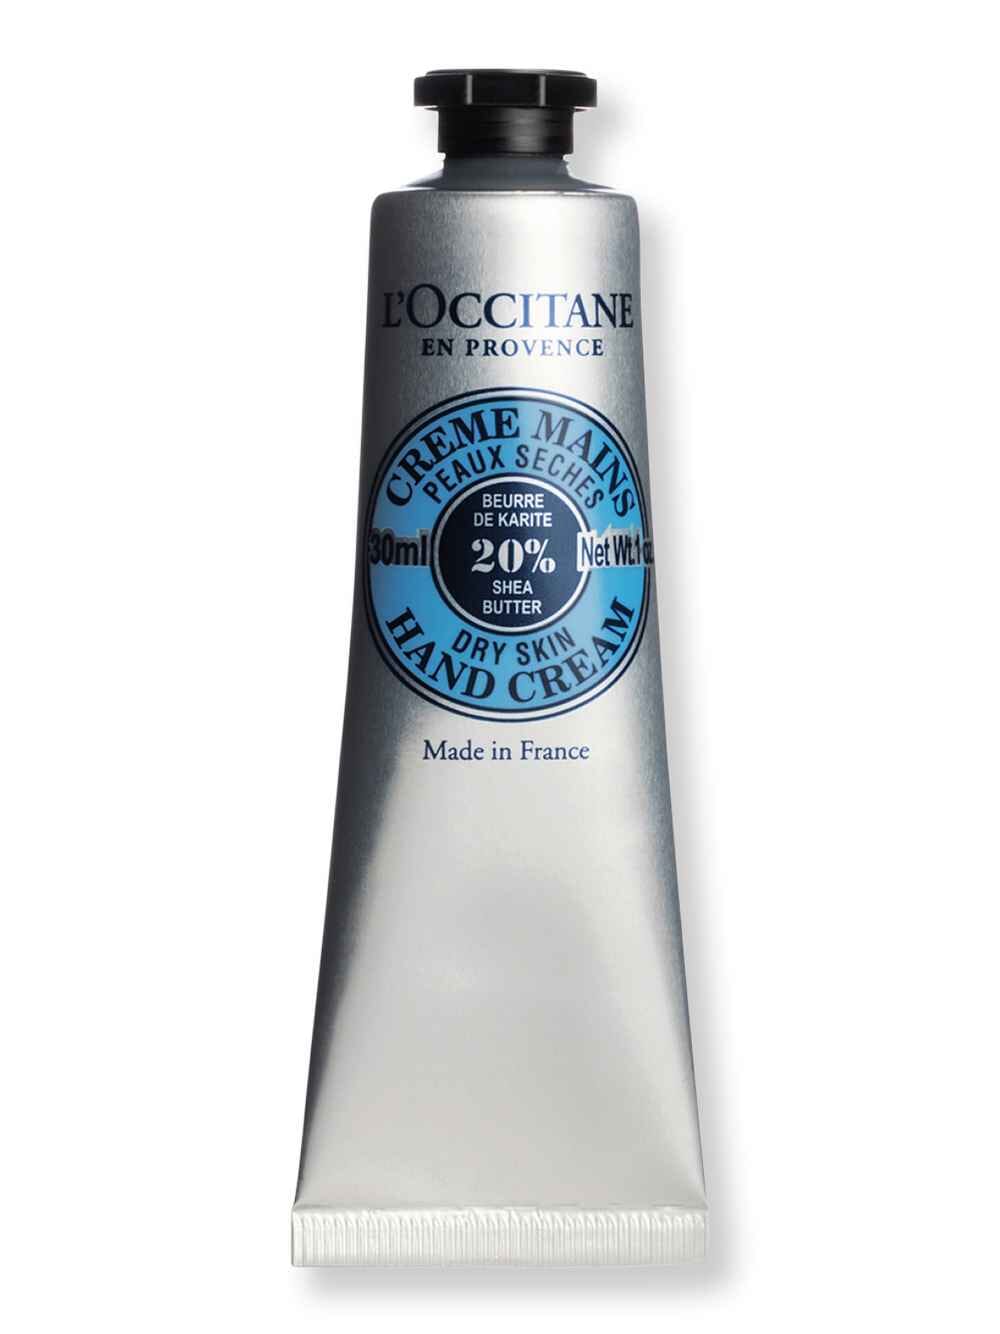 L'Occitane L'Occitane Shea Butter Hand Cream 1 oz30 ml Hand Creams & Lotions 